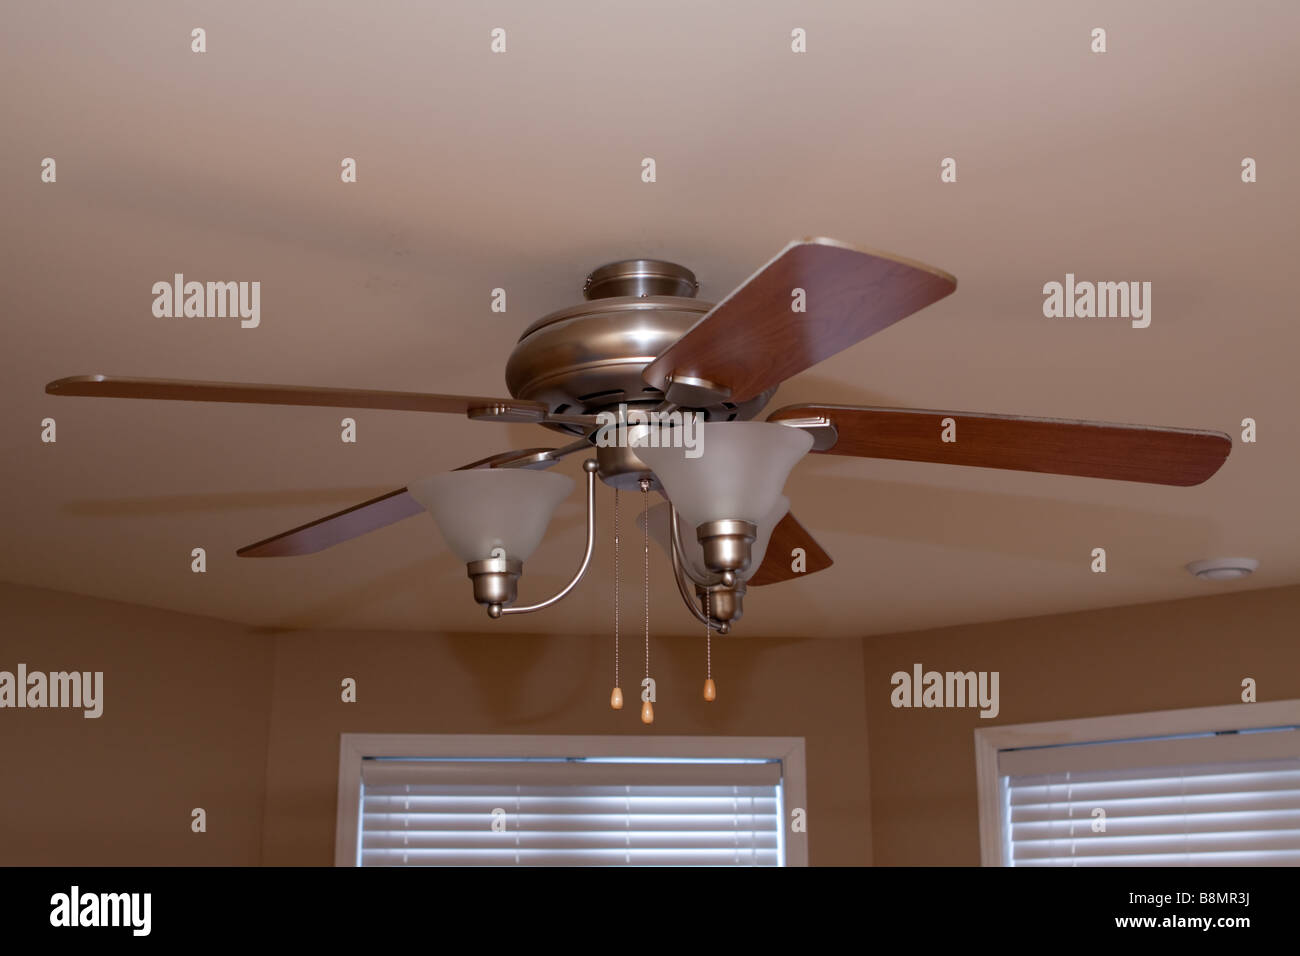 bedroom ceiling fan Stock Photo